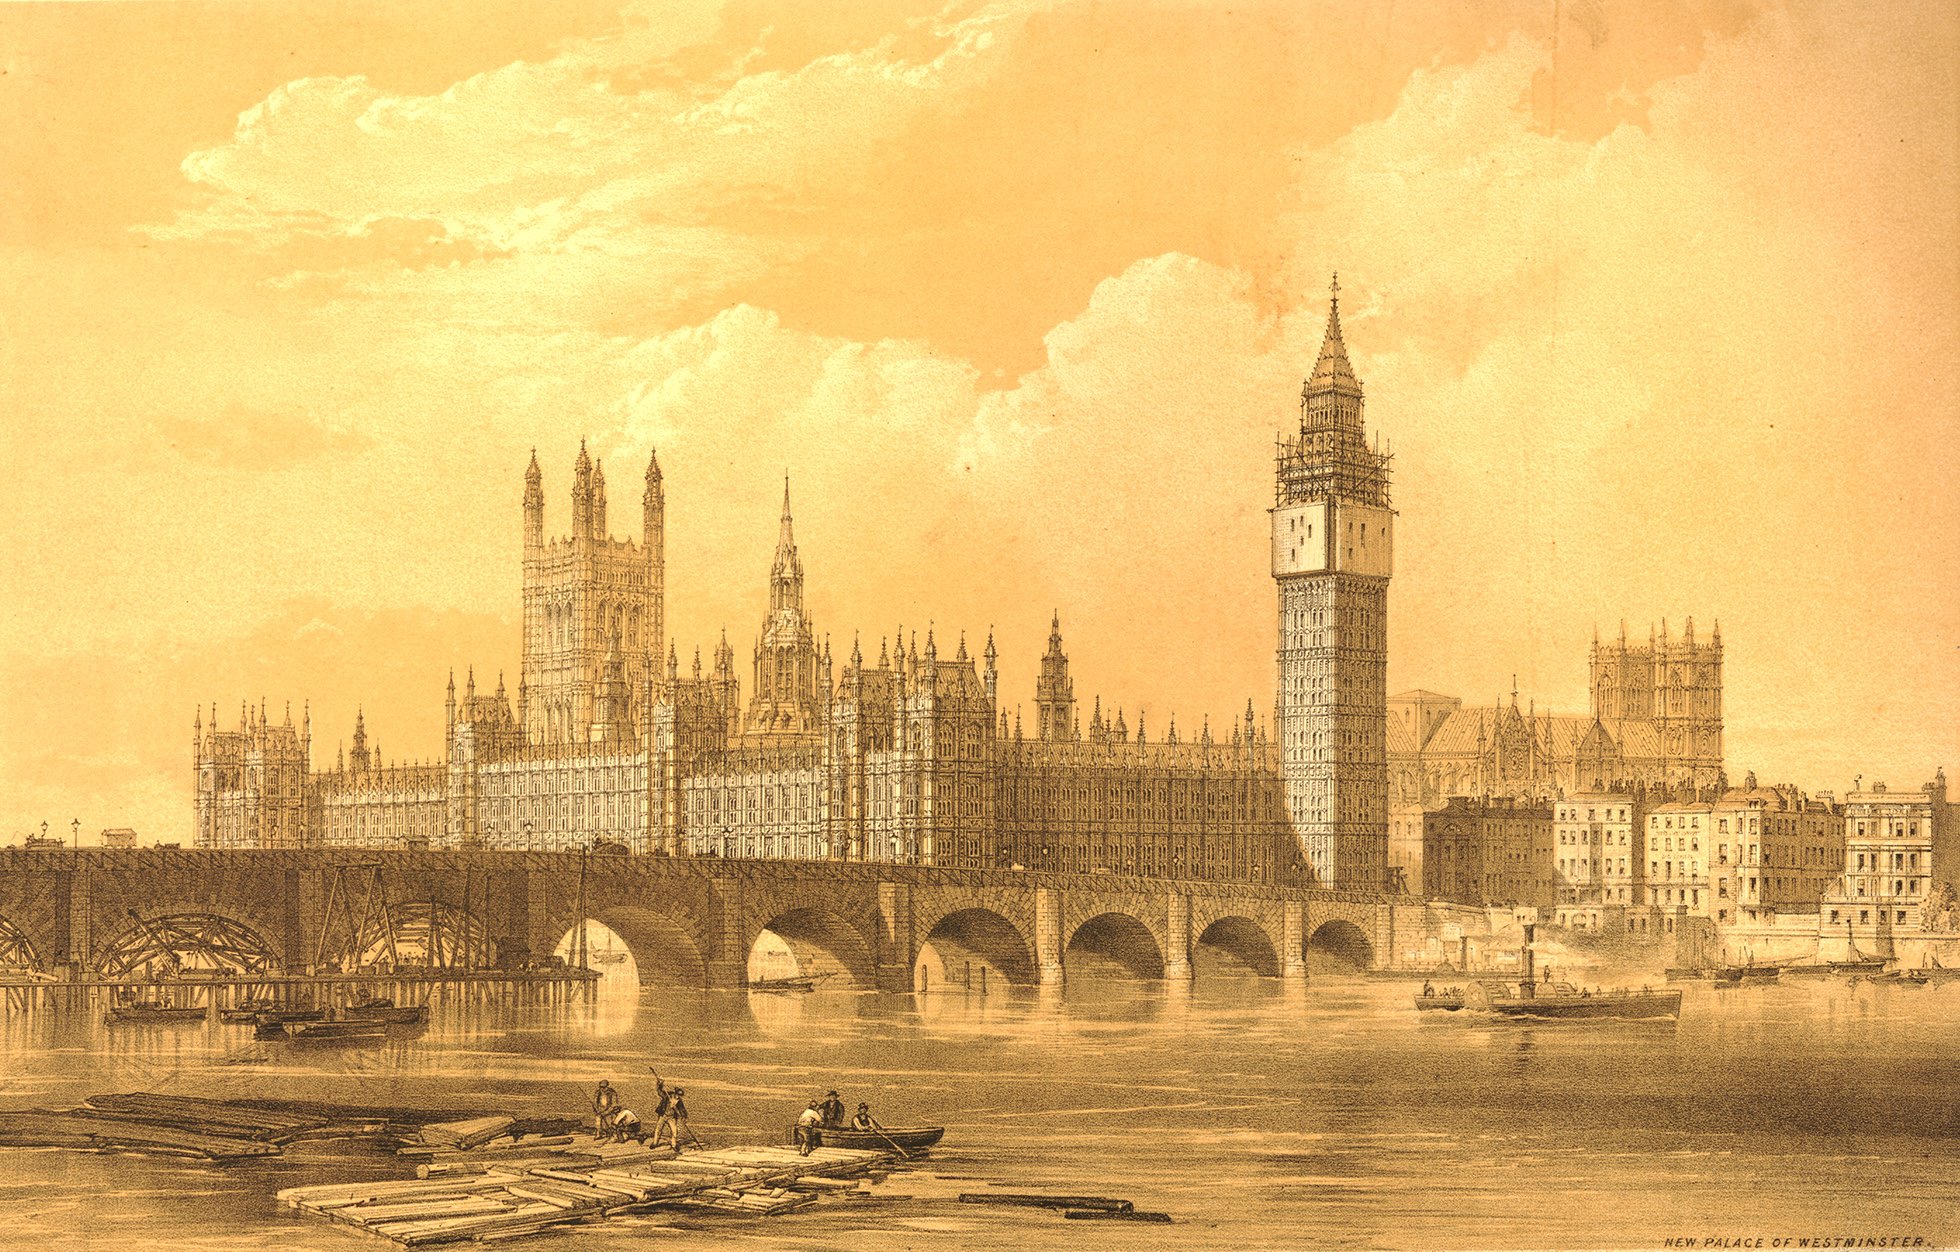 Первая в мире в лондоне. Вестминстерский дворец Лондон Викторианская эпоха. Вестминстер Лондон 17 век. Лондон 16 век Вестминстерский дворец. Вестминстерский дворец 17 век.